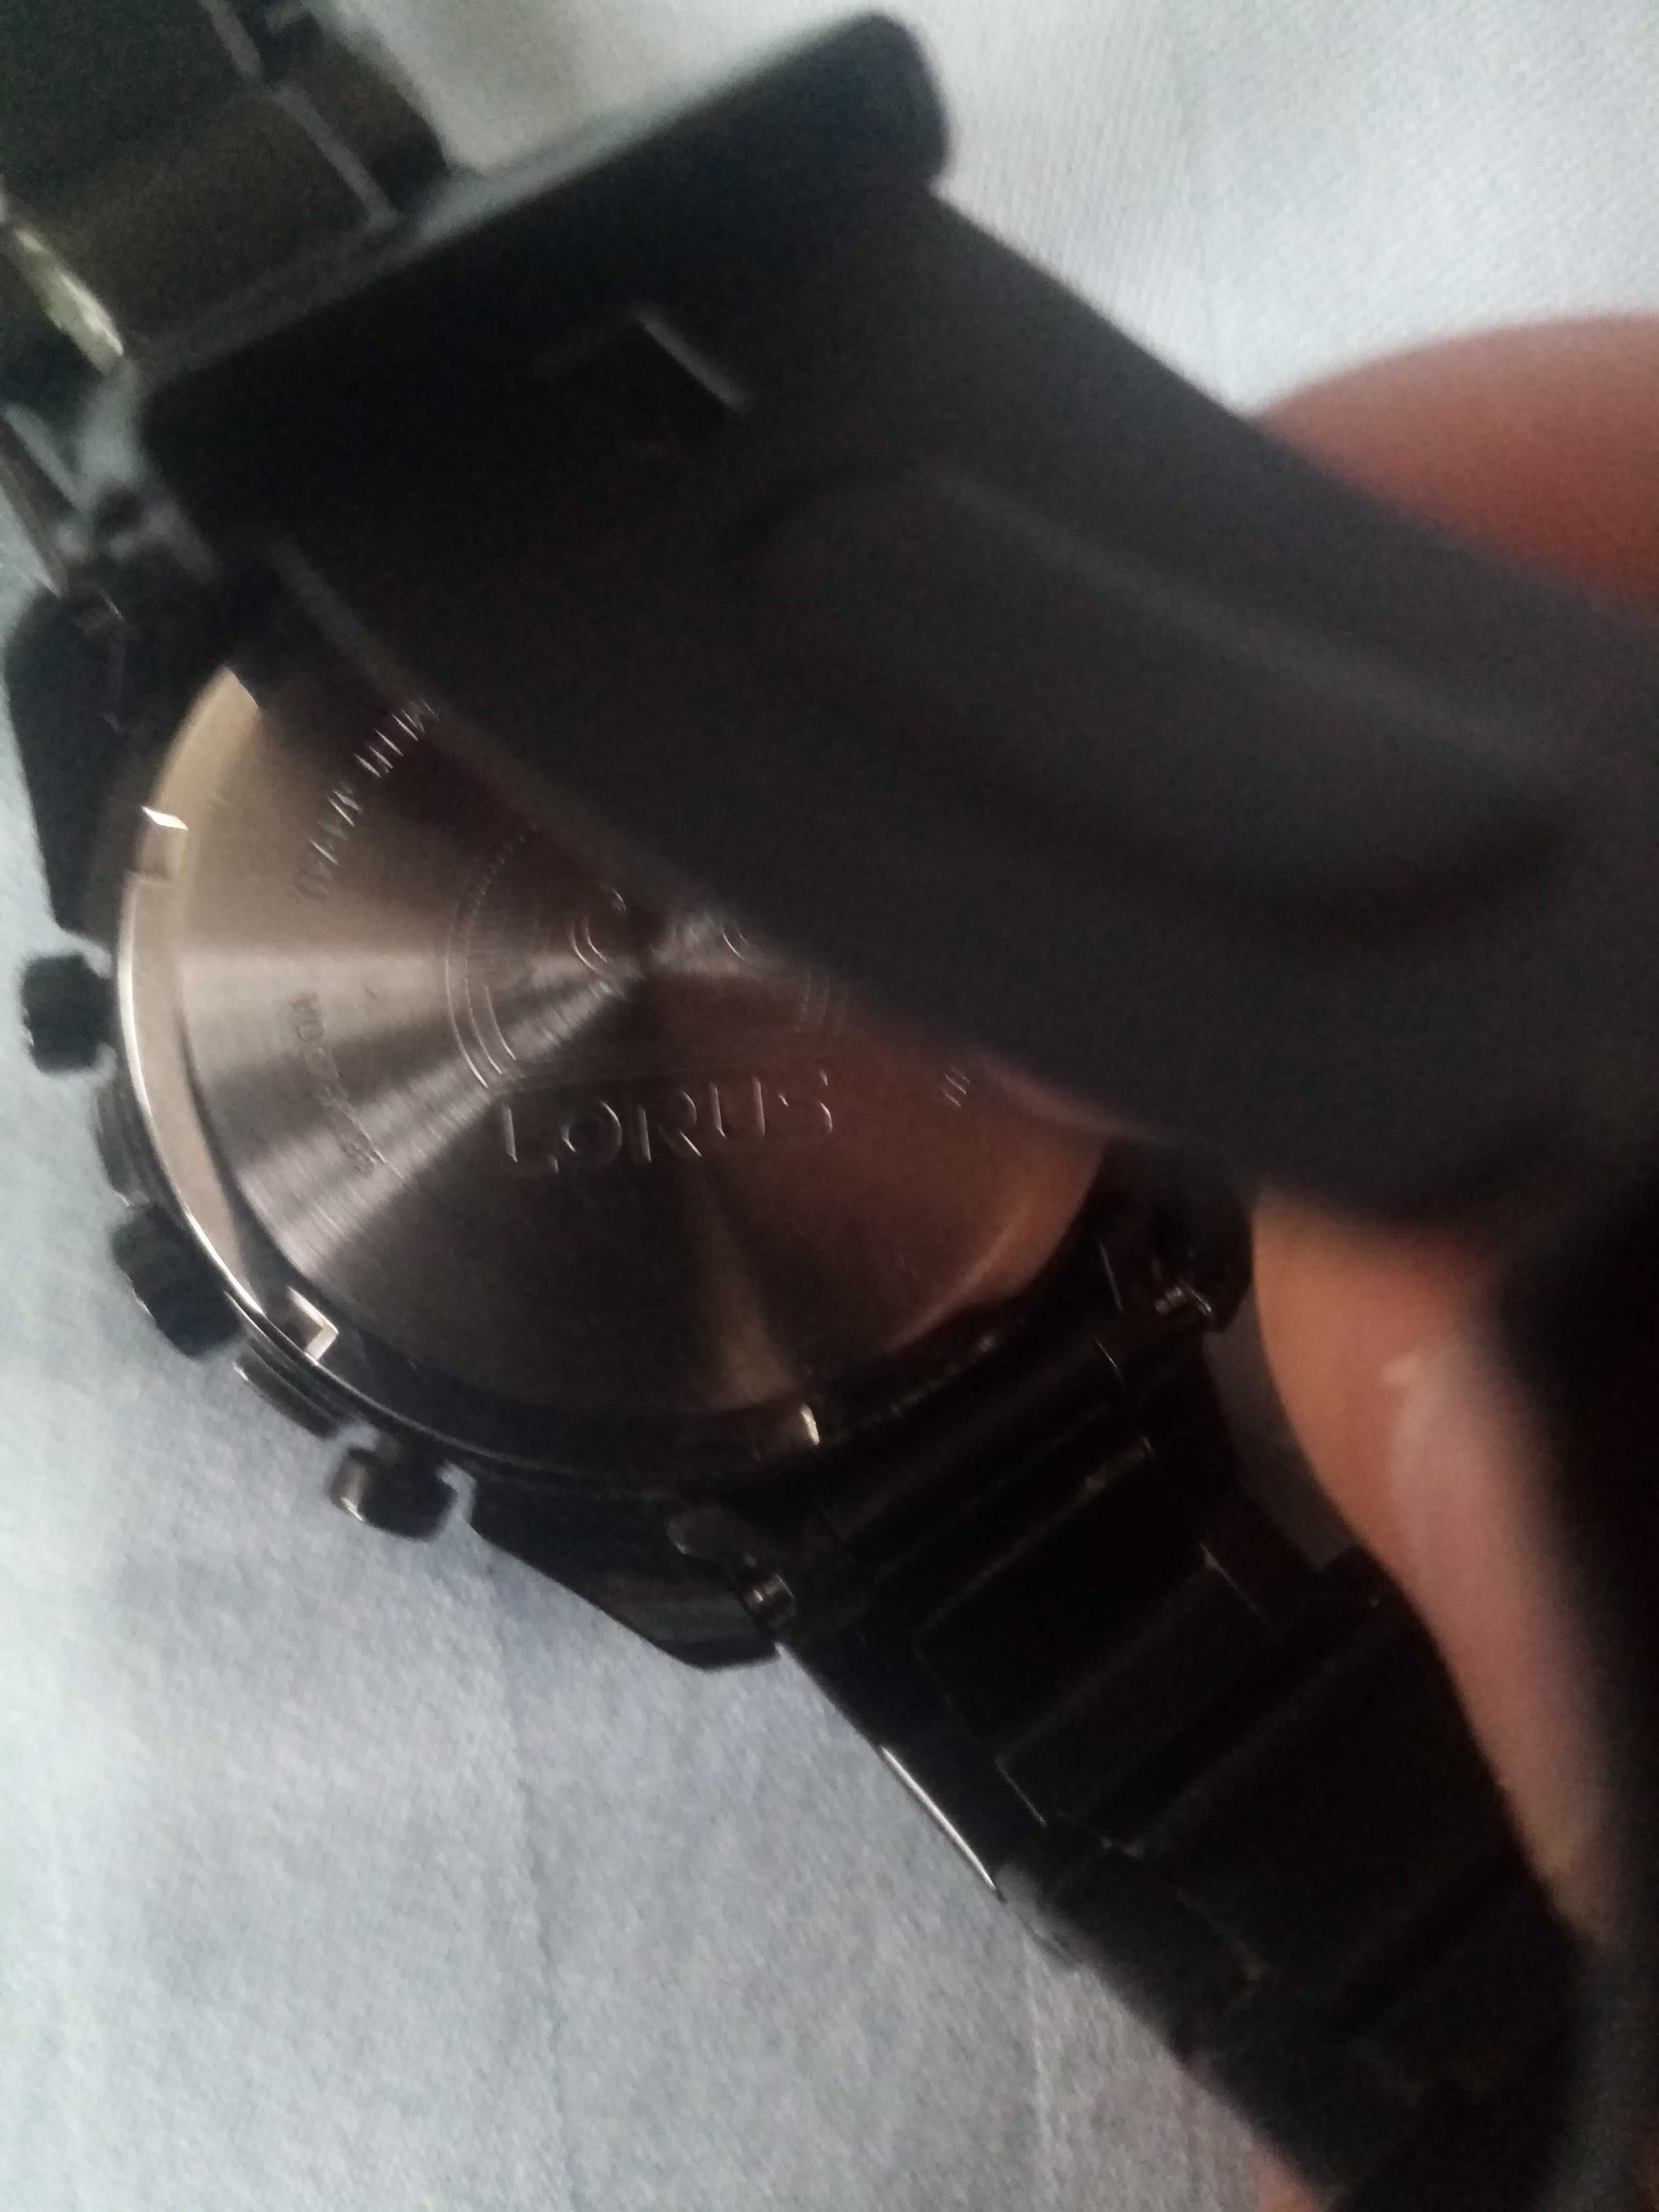 Oryginalny zegarek męski Lorus piękny czarny połysk 100 zł.